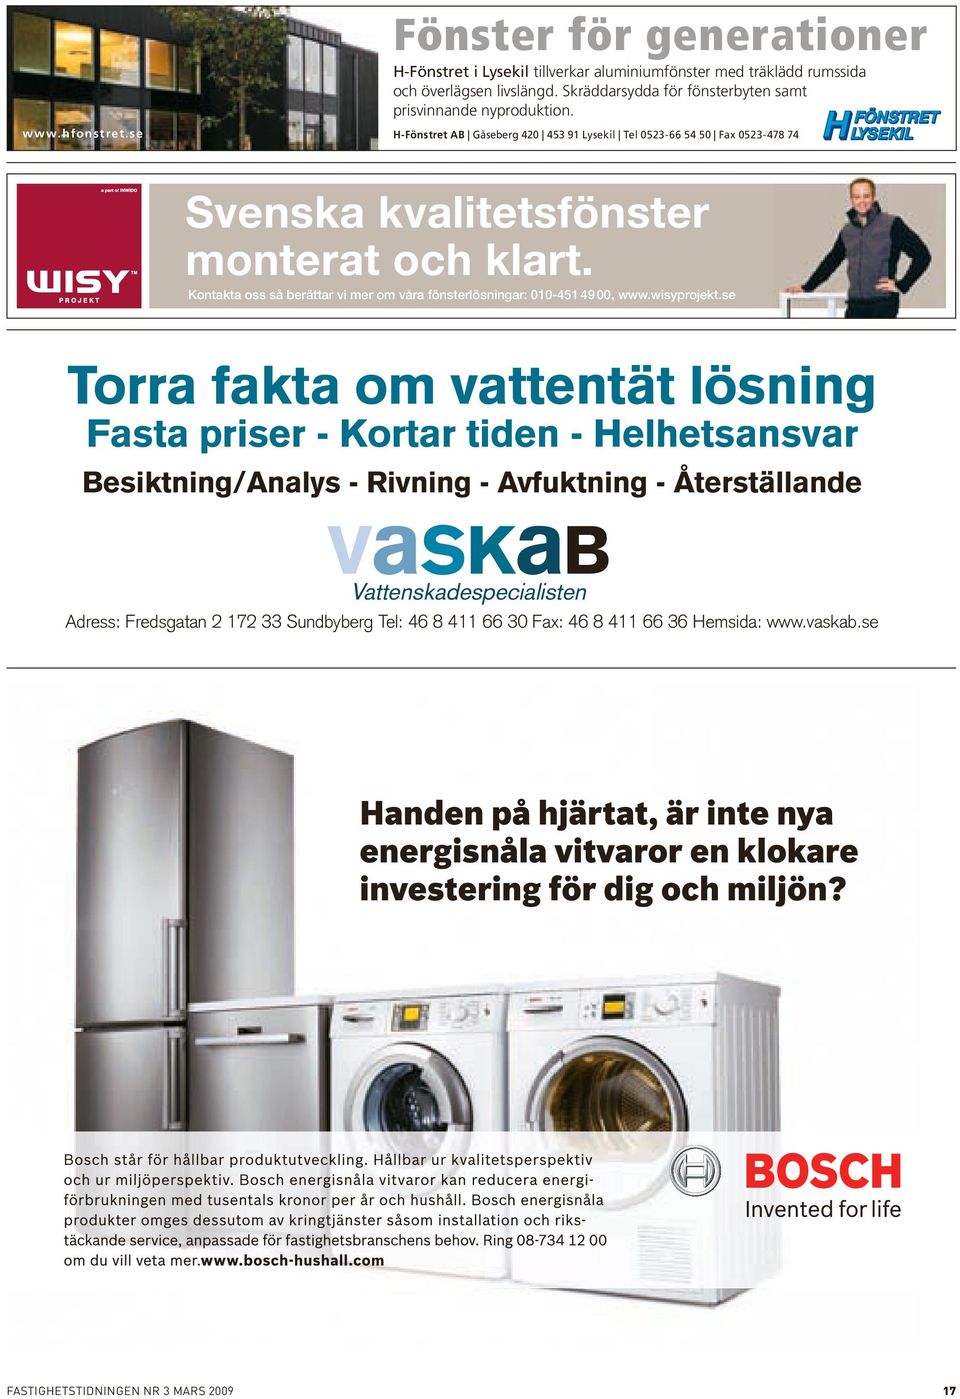 se H-Fönstret AB Gåseberg 420 453 91 Lysekil Tel 0523-66 54 50 Fax 0523-478 74 Svenska kvalitetsfönster monterat